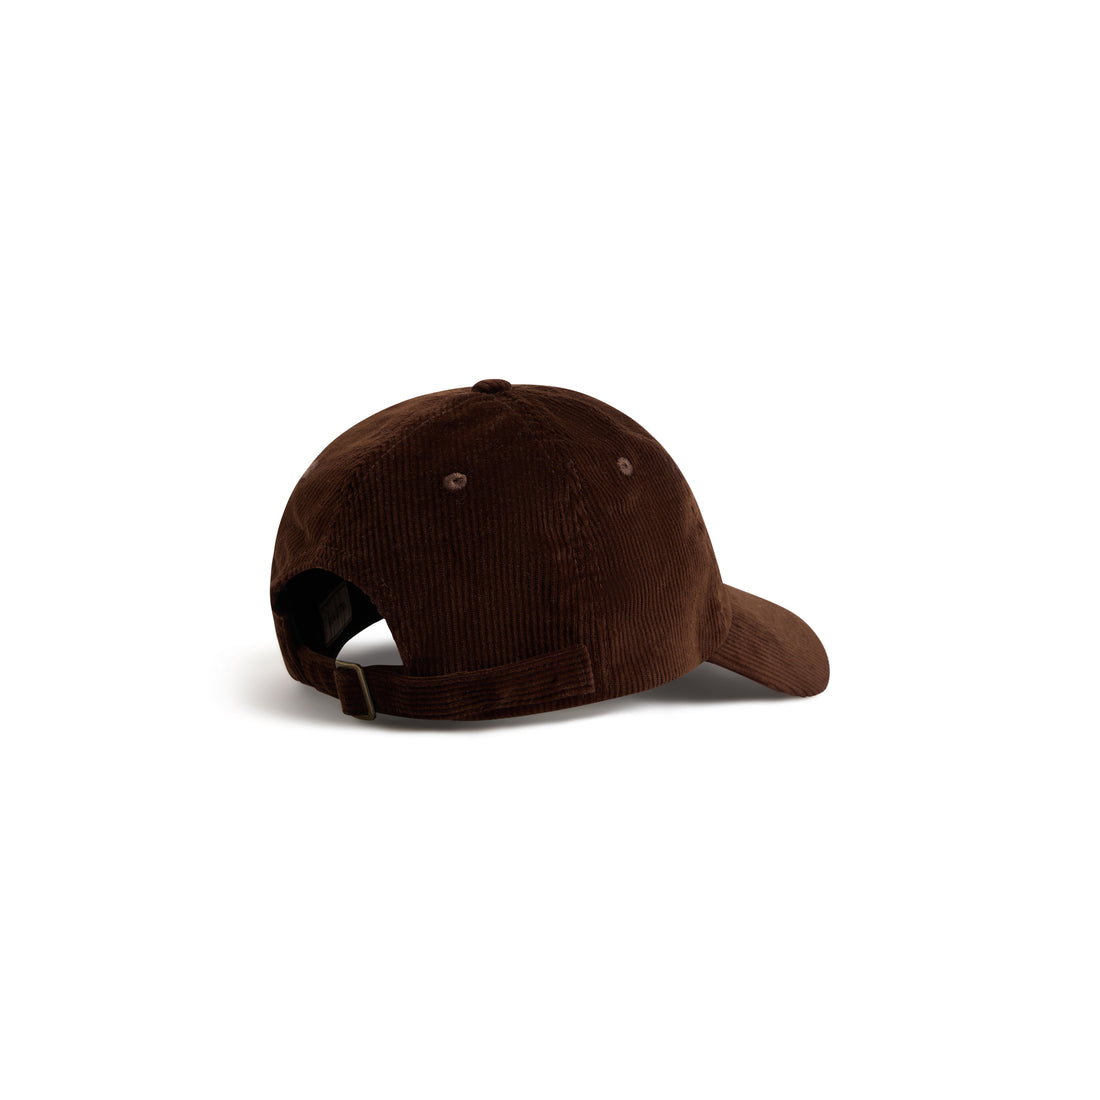 La casquette velours marron